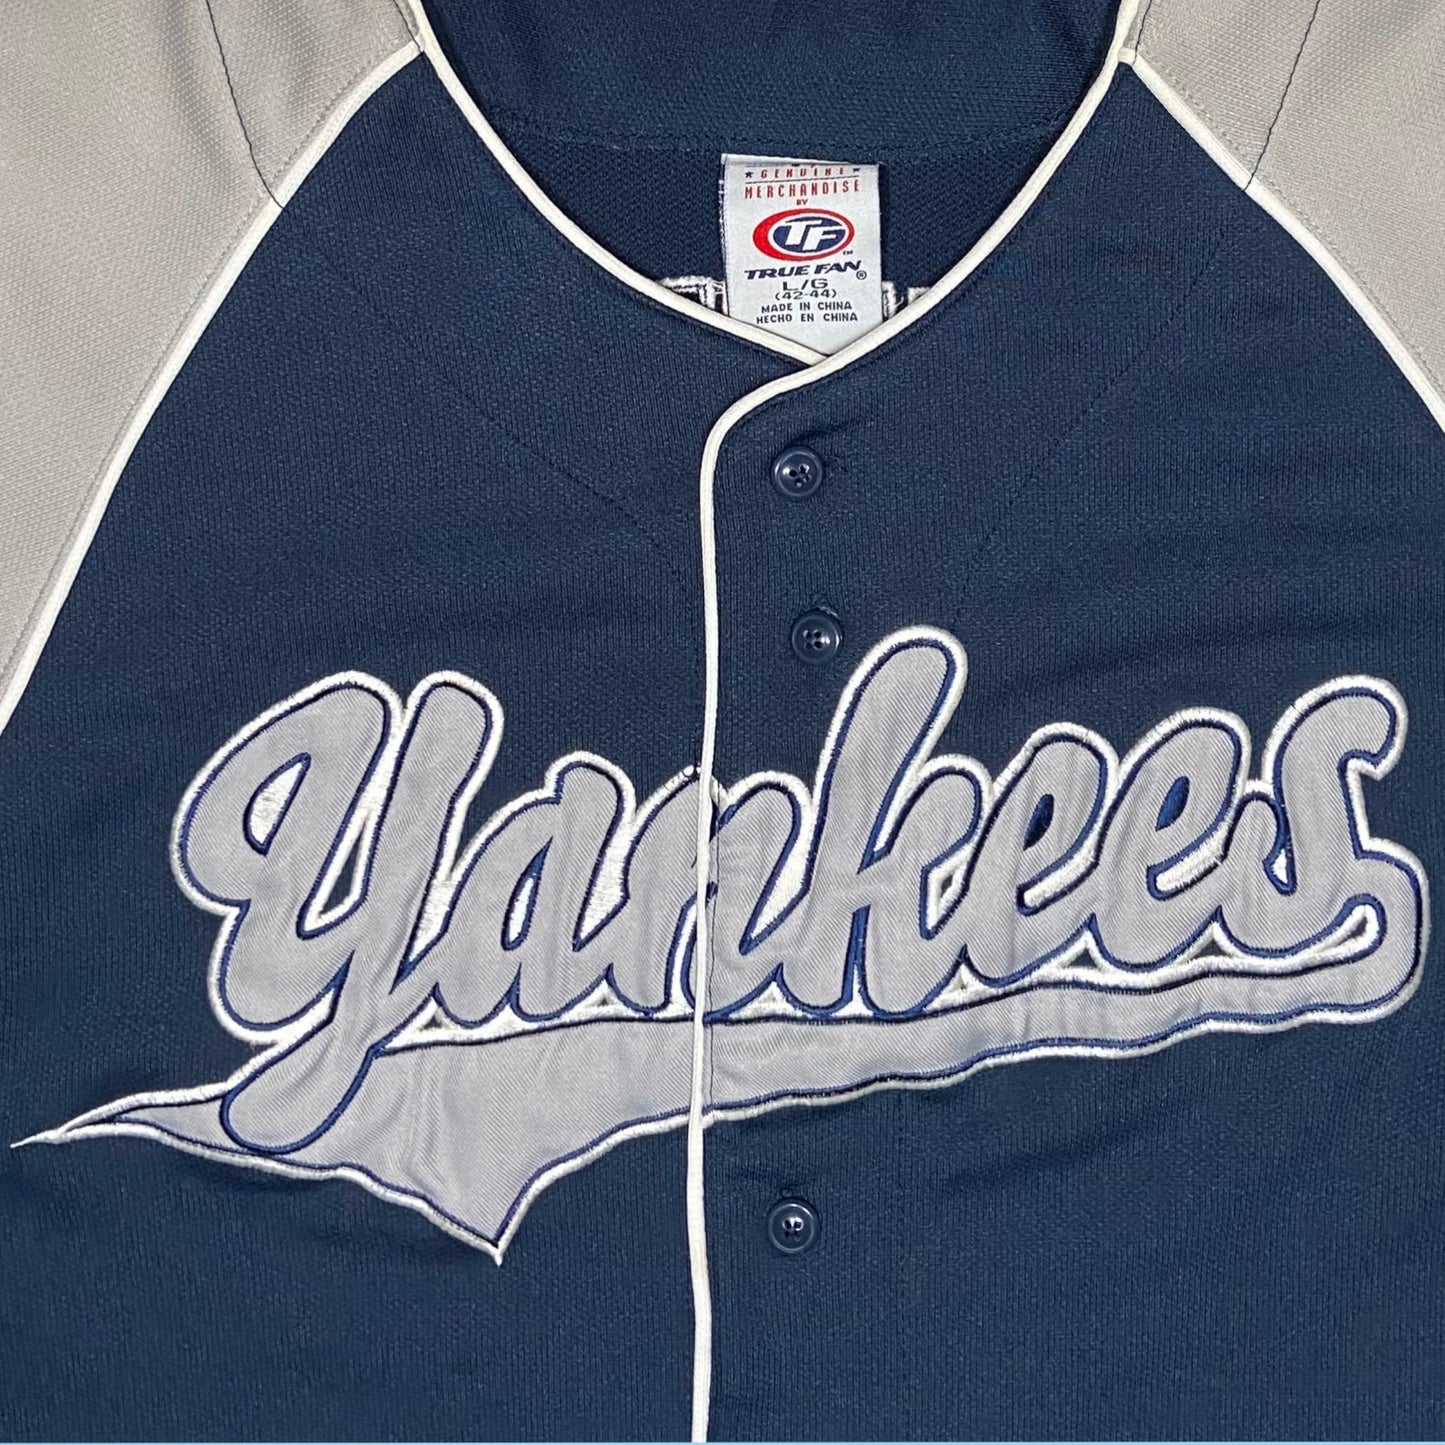 Vintage Yankees Jeter jersey - L